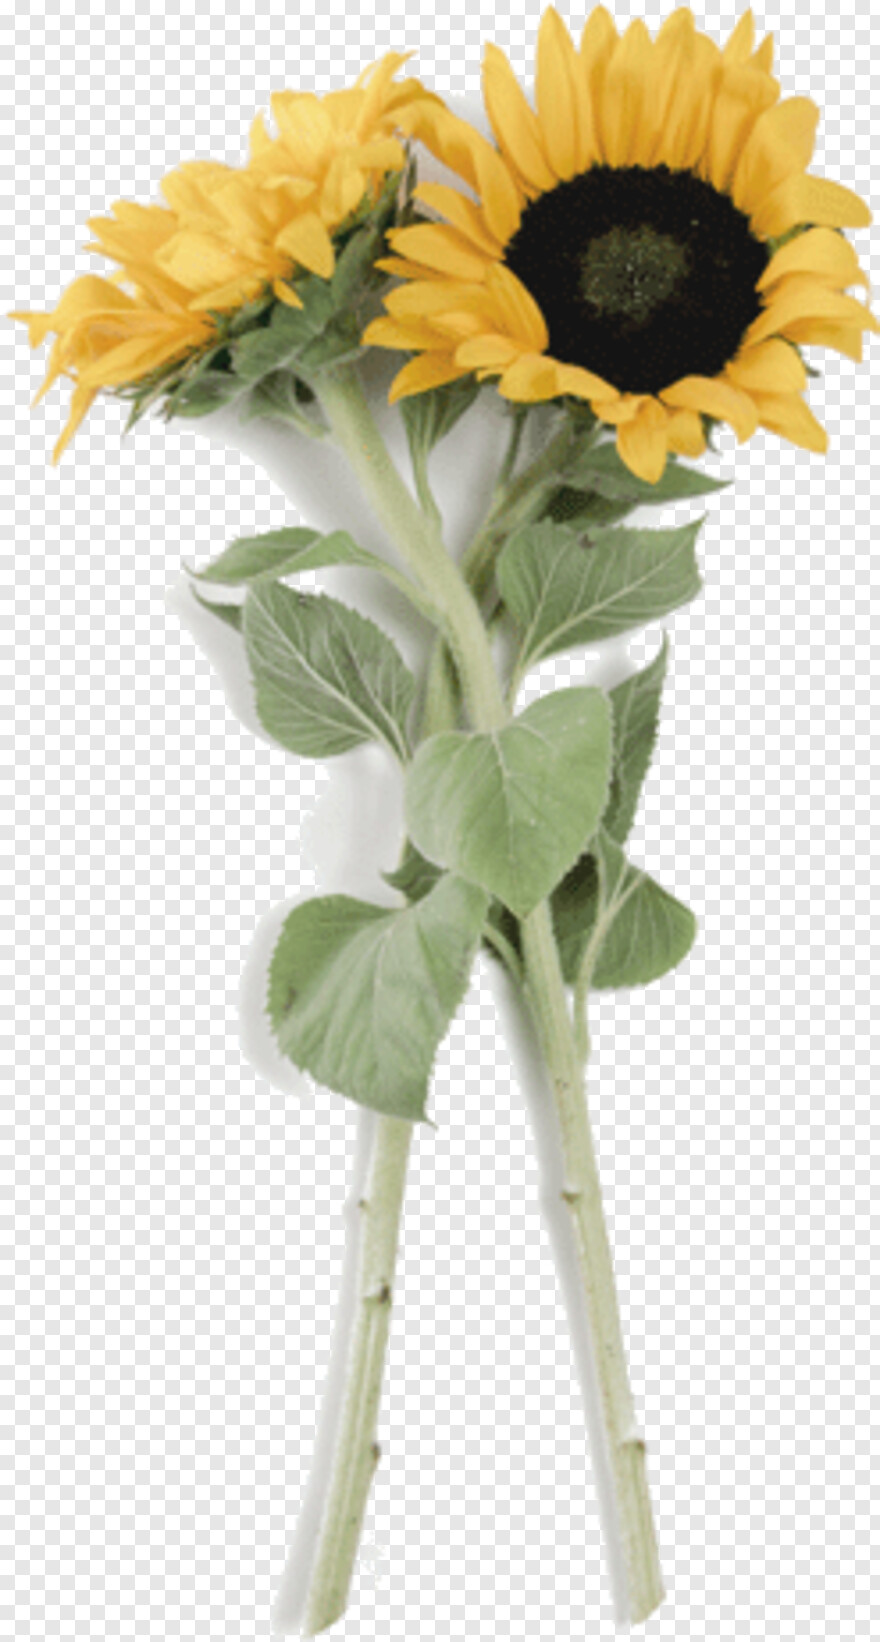 sunflower-vector # 922296